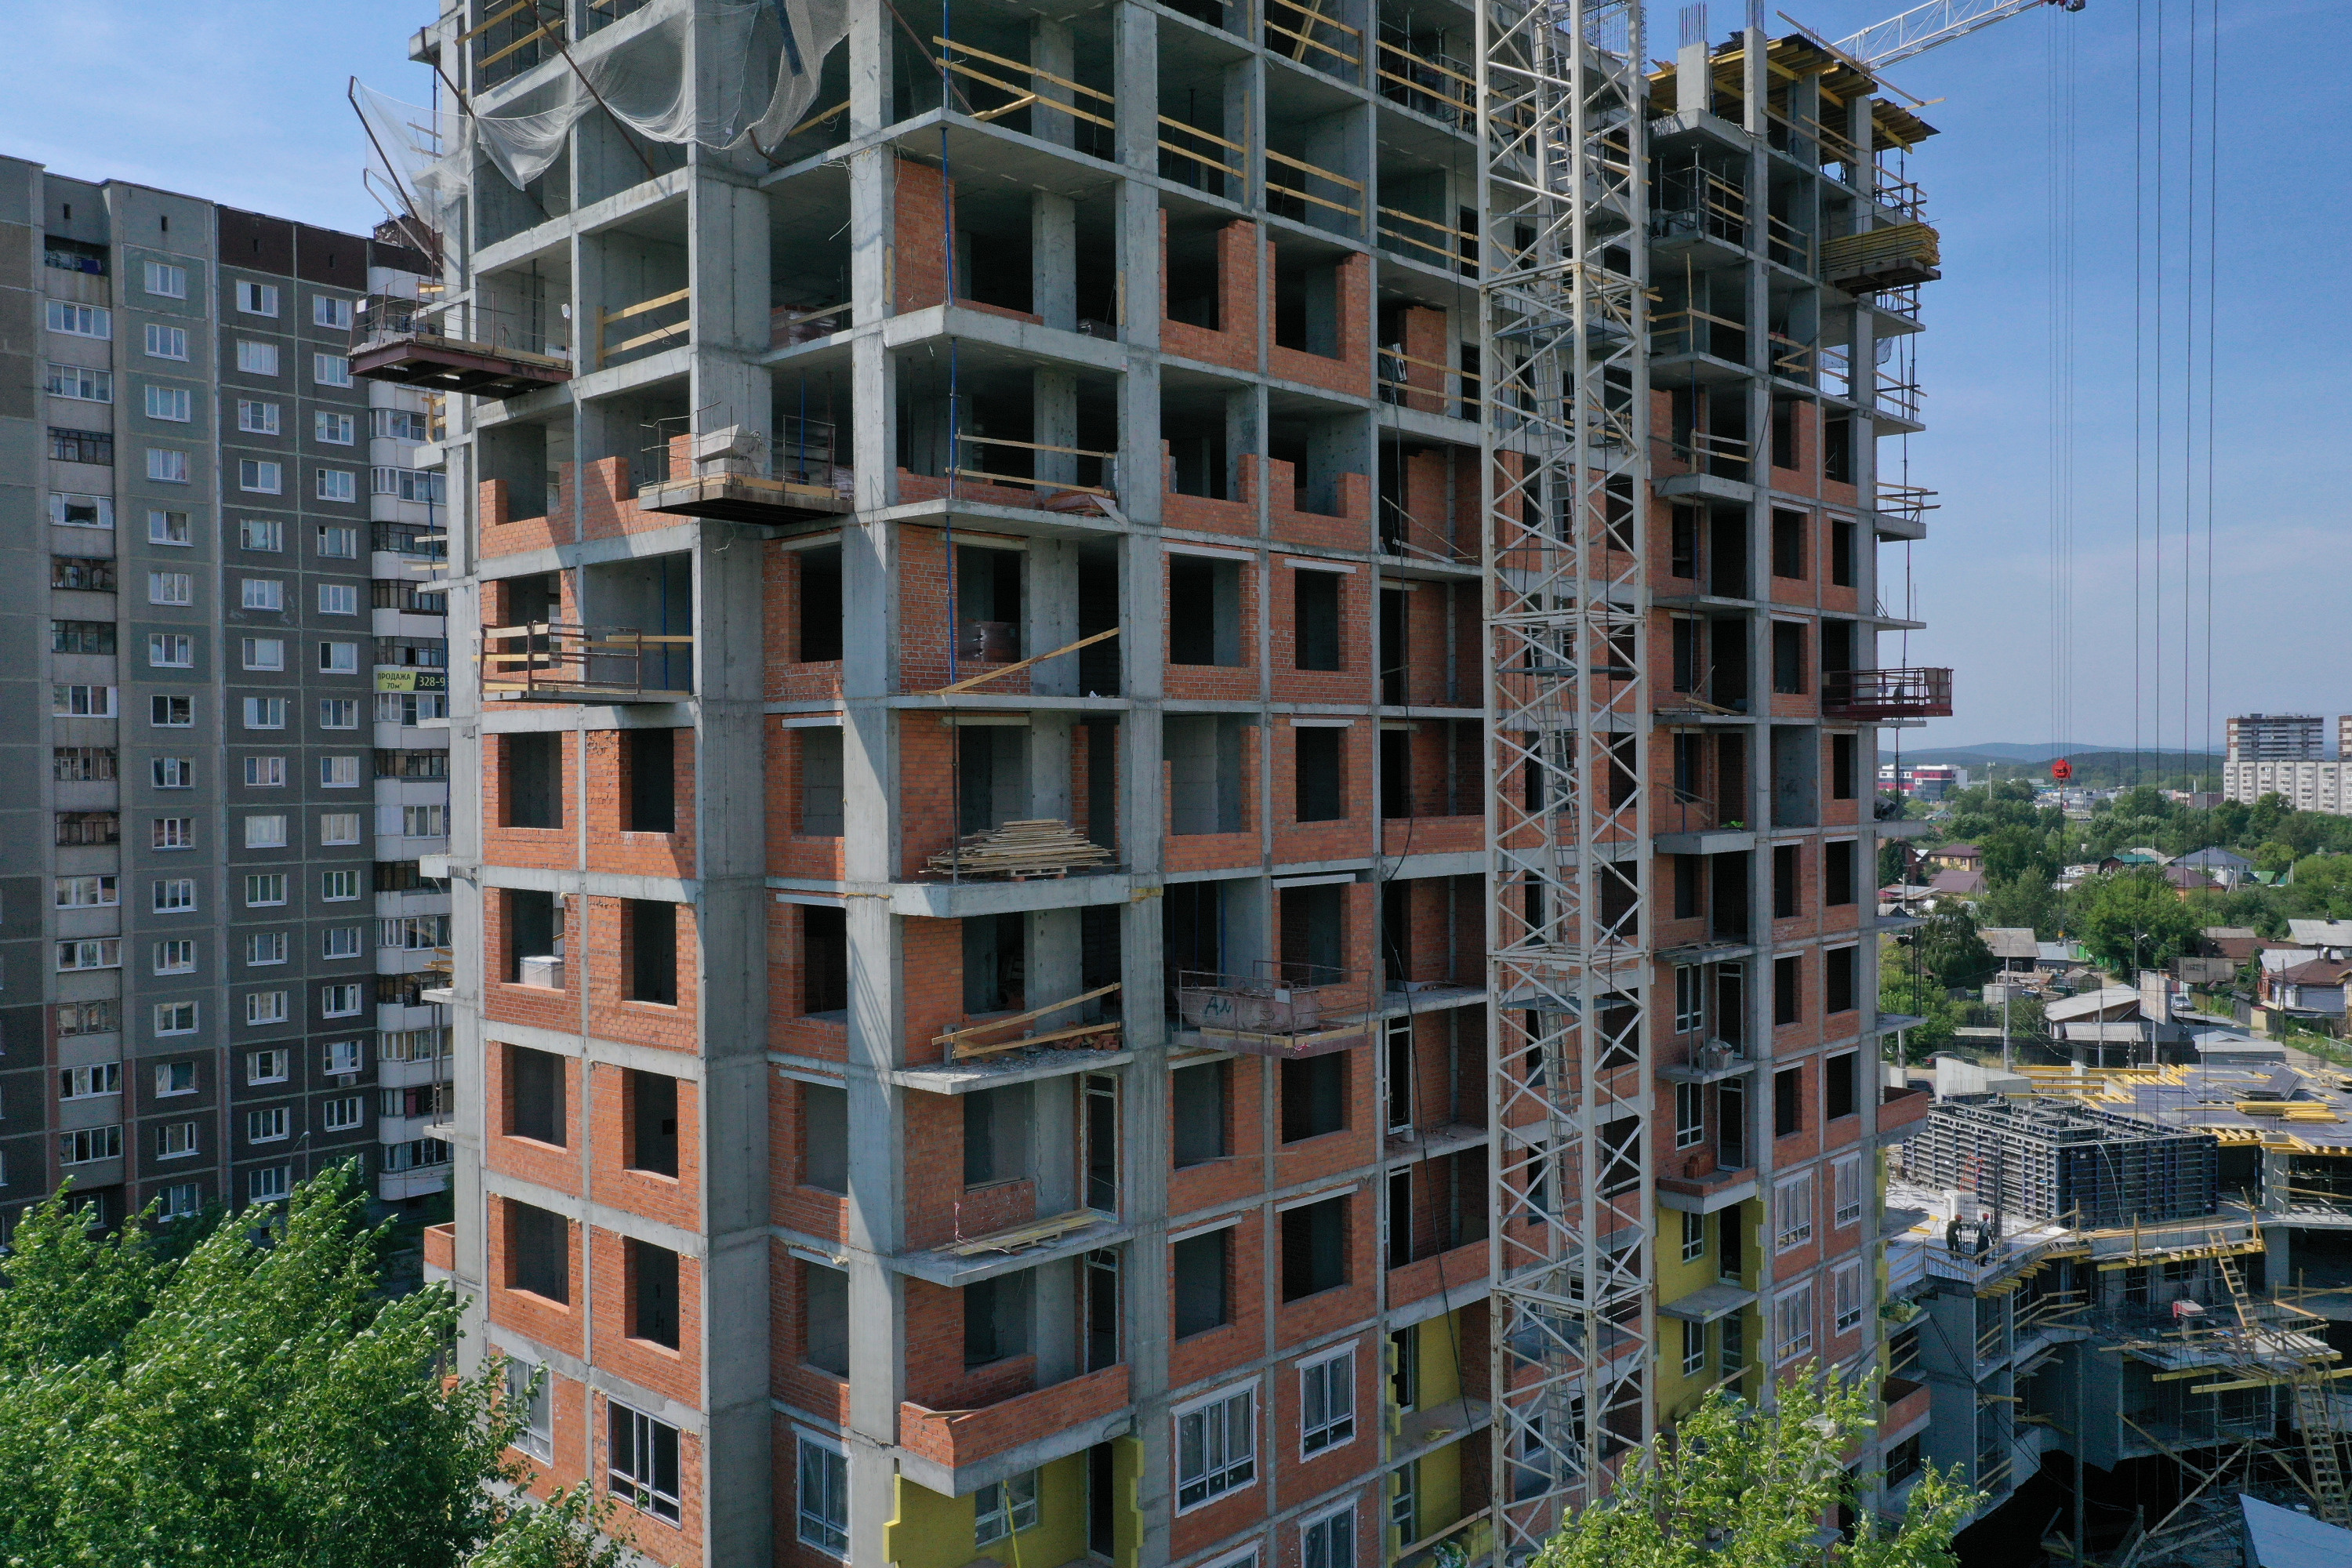 ЖК «Тихомиров» — это пример баланса между кирпичным домостроением, архитектурными трендами и новыми технологиями